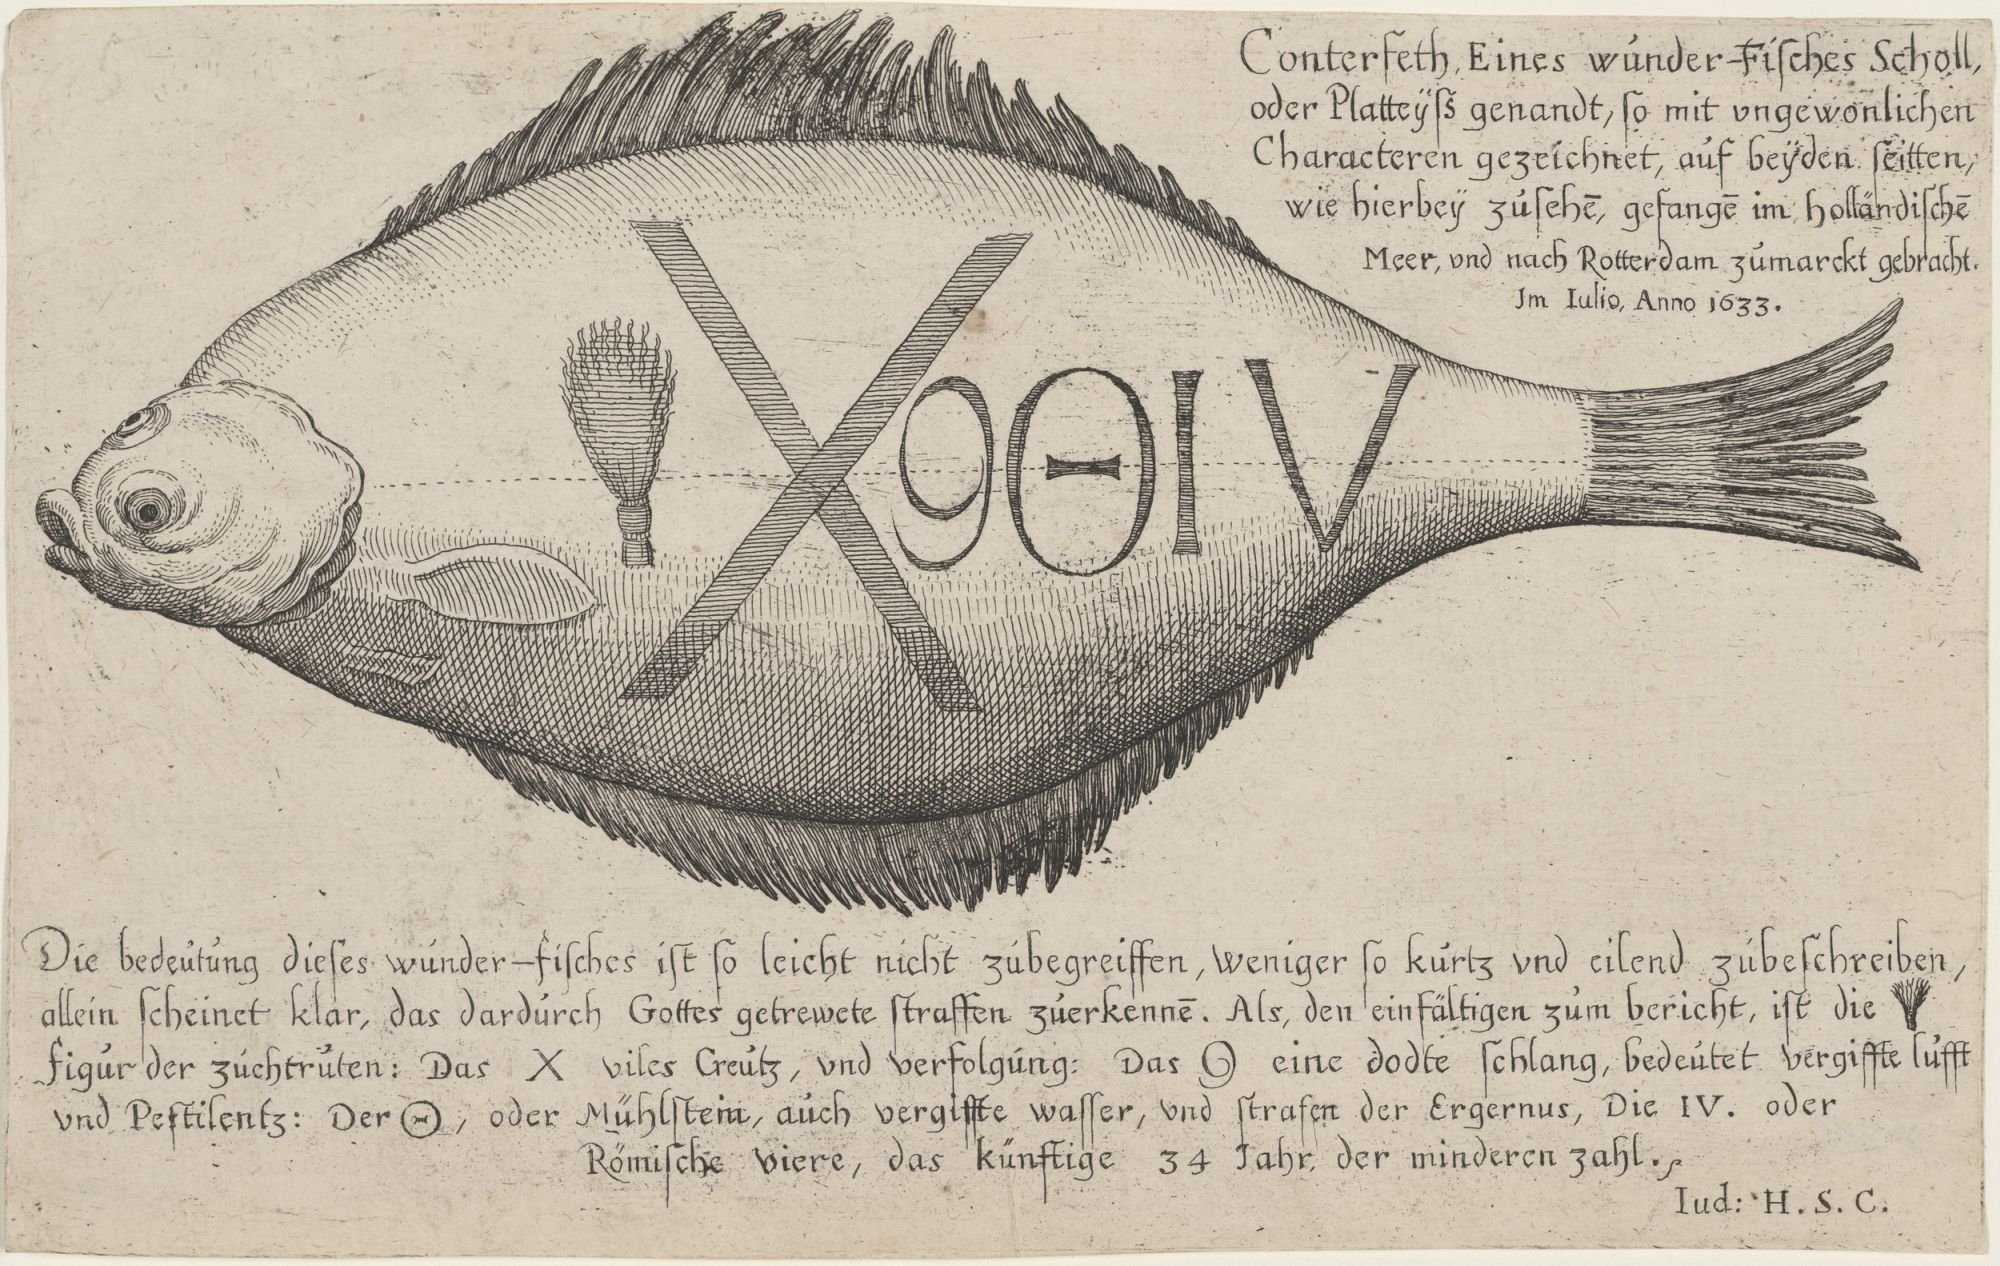 Conterfeth Eines wunder-Fisches Scholl,/ oder Platteyß genandt, so mit ungewonlichen/ Characteren gezeichnet, auf beyden seitten,/ wie hierbey zusehe, (Kulturstiftung Sachsen-Anhalt Public Domain Mark)